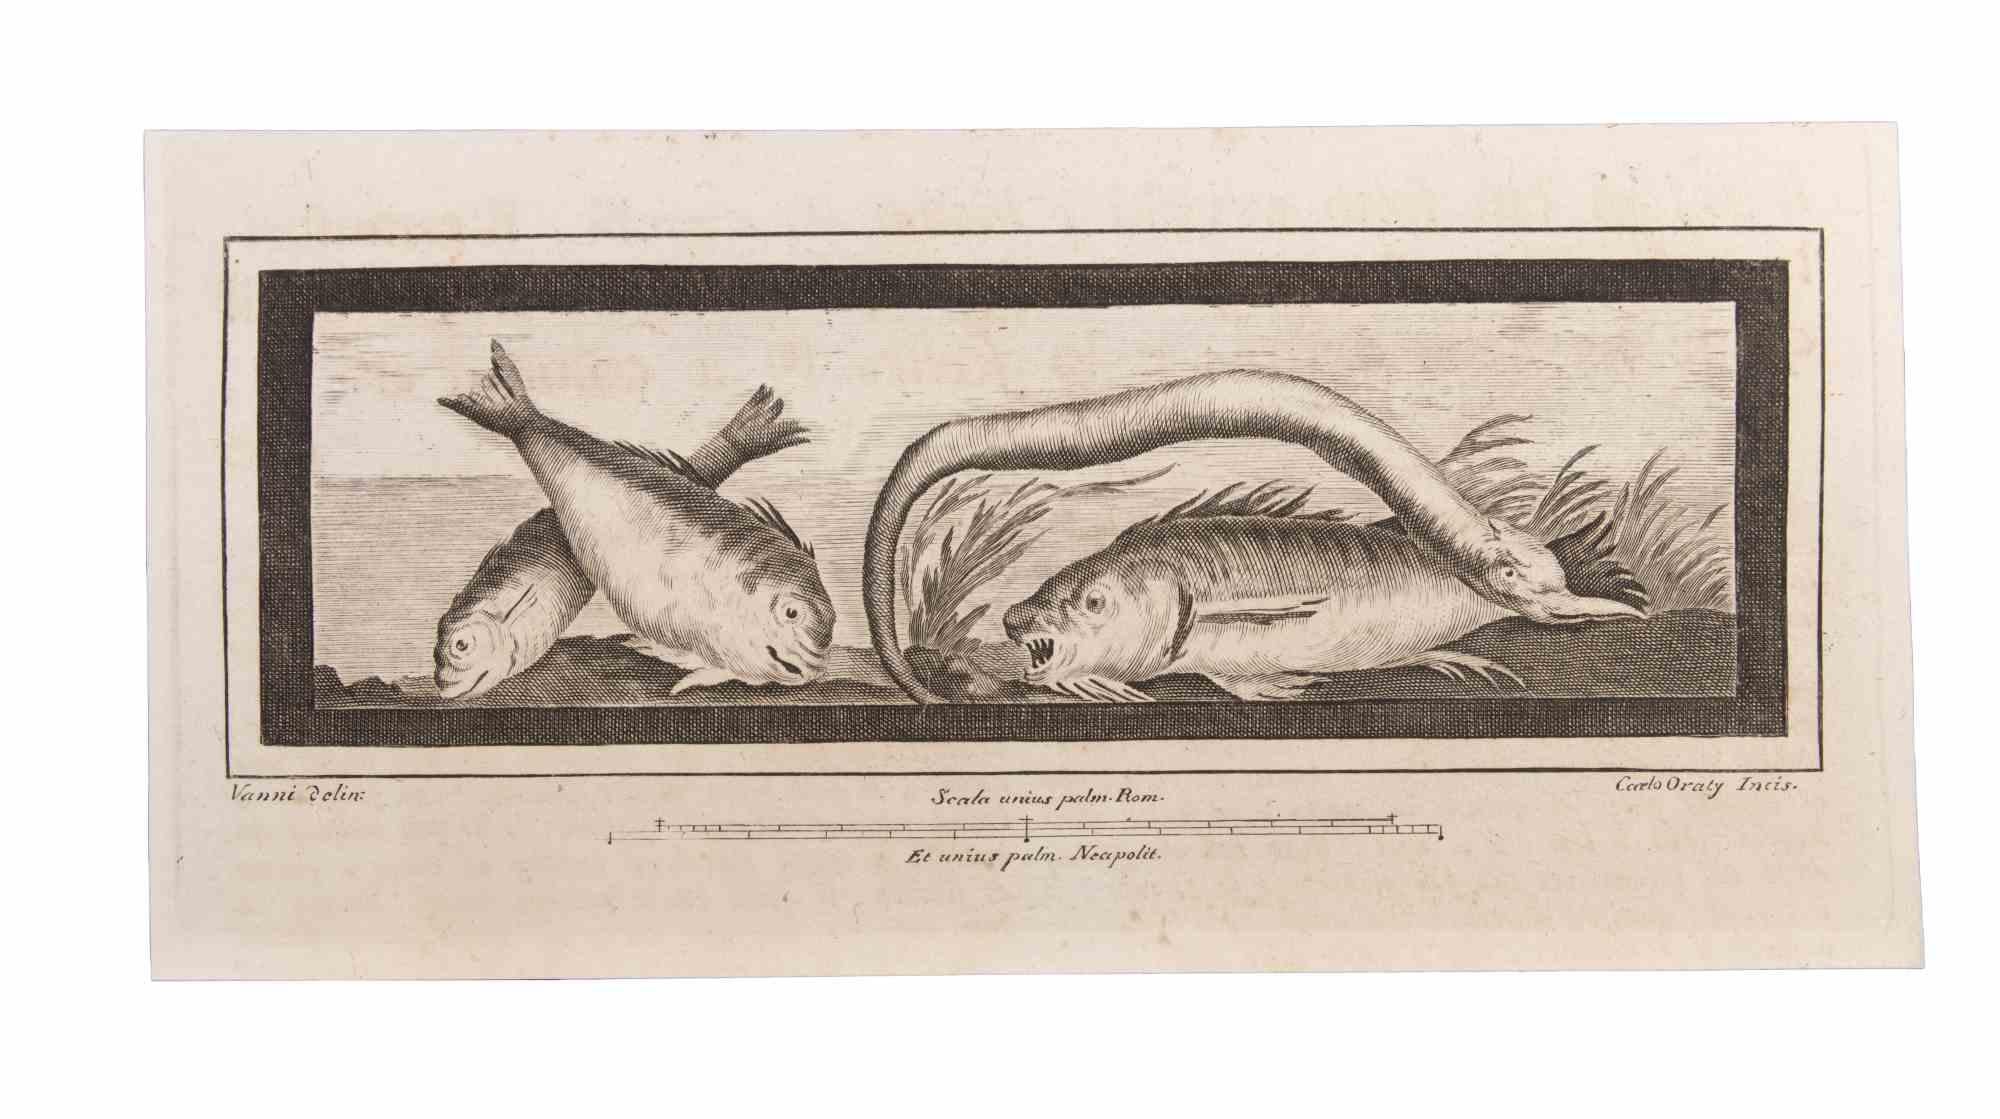 Décoration avec des animaux est une gravure réalisée par Carlo Oraty (18ème siècle).

La gravure appartient à la suite d'estampes "Antiquités d'Herculanum exposées" (titre original : "Le Antichità di Ercolano Esposte"), un volume de huit gravures